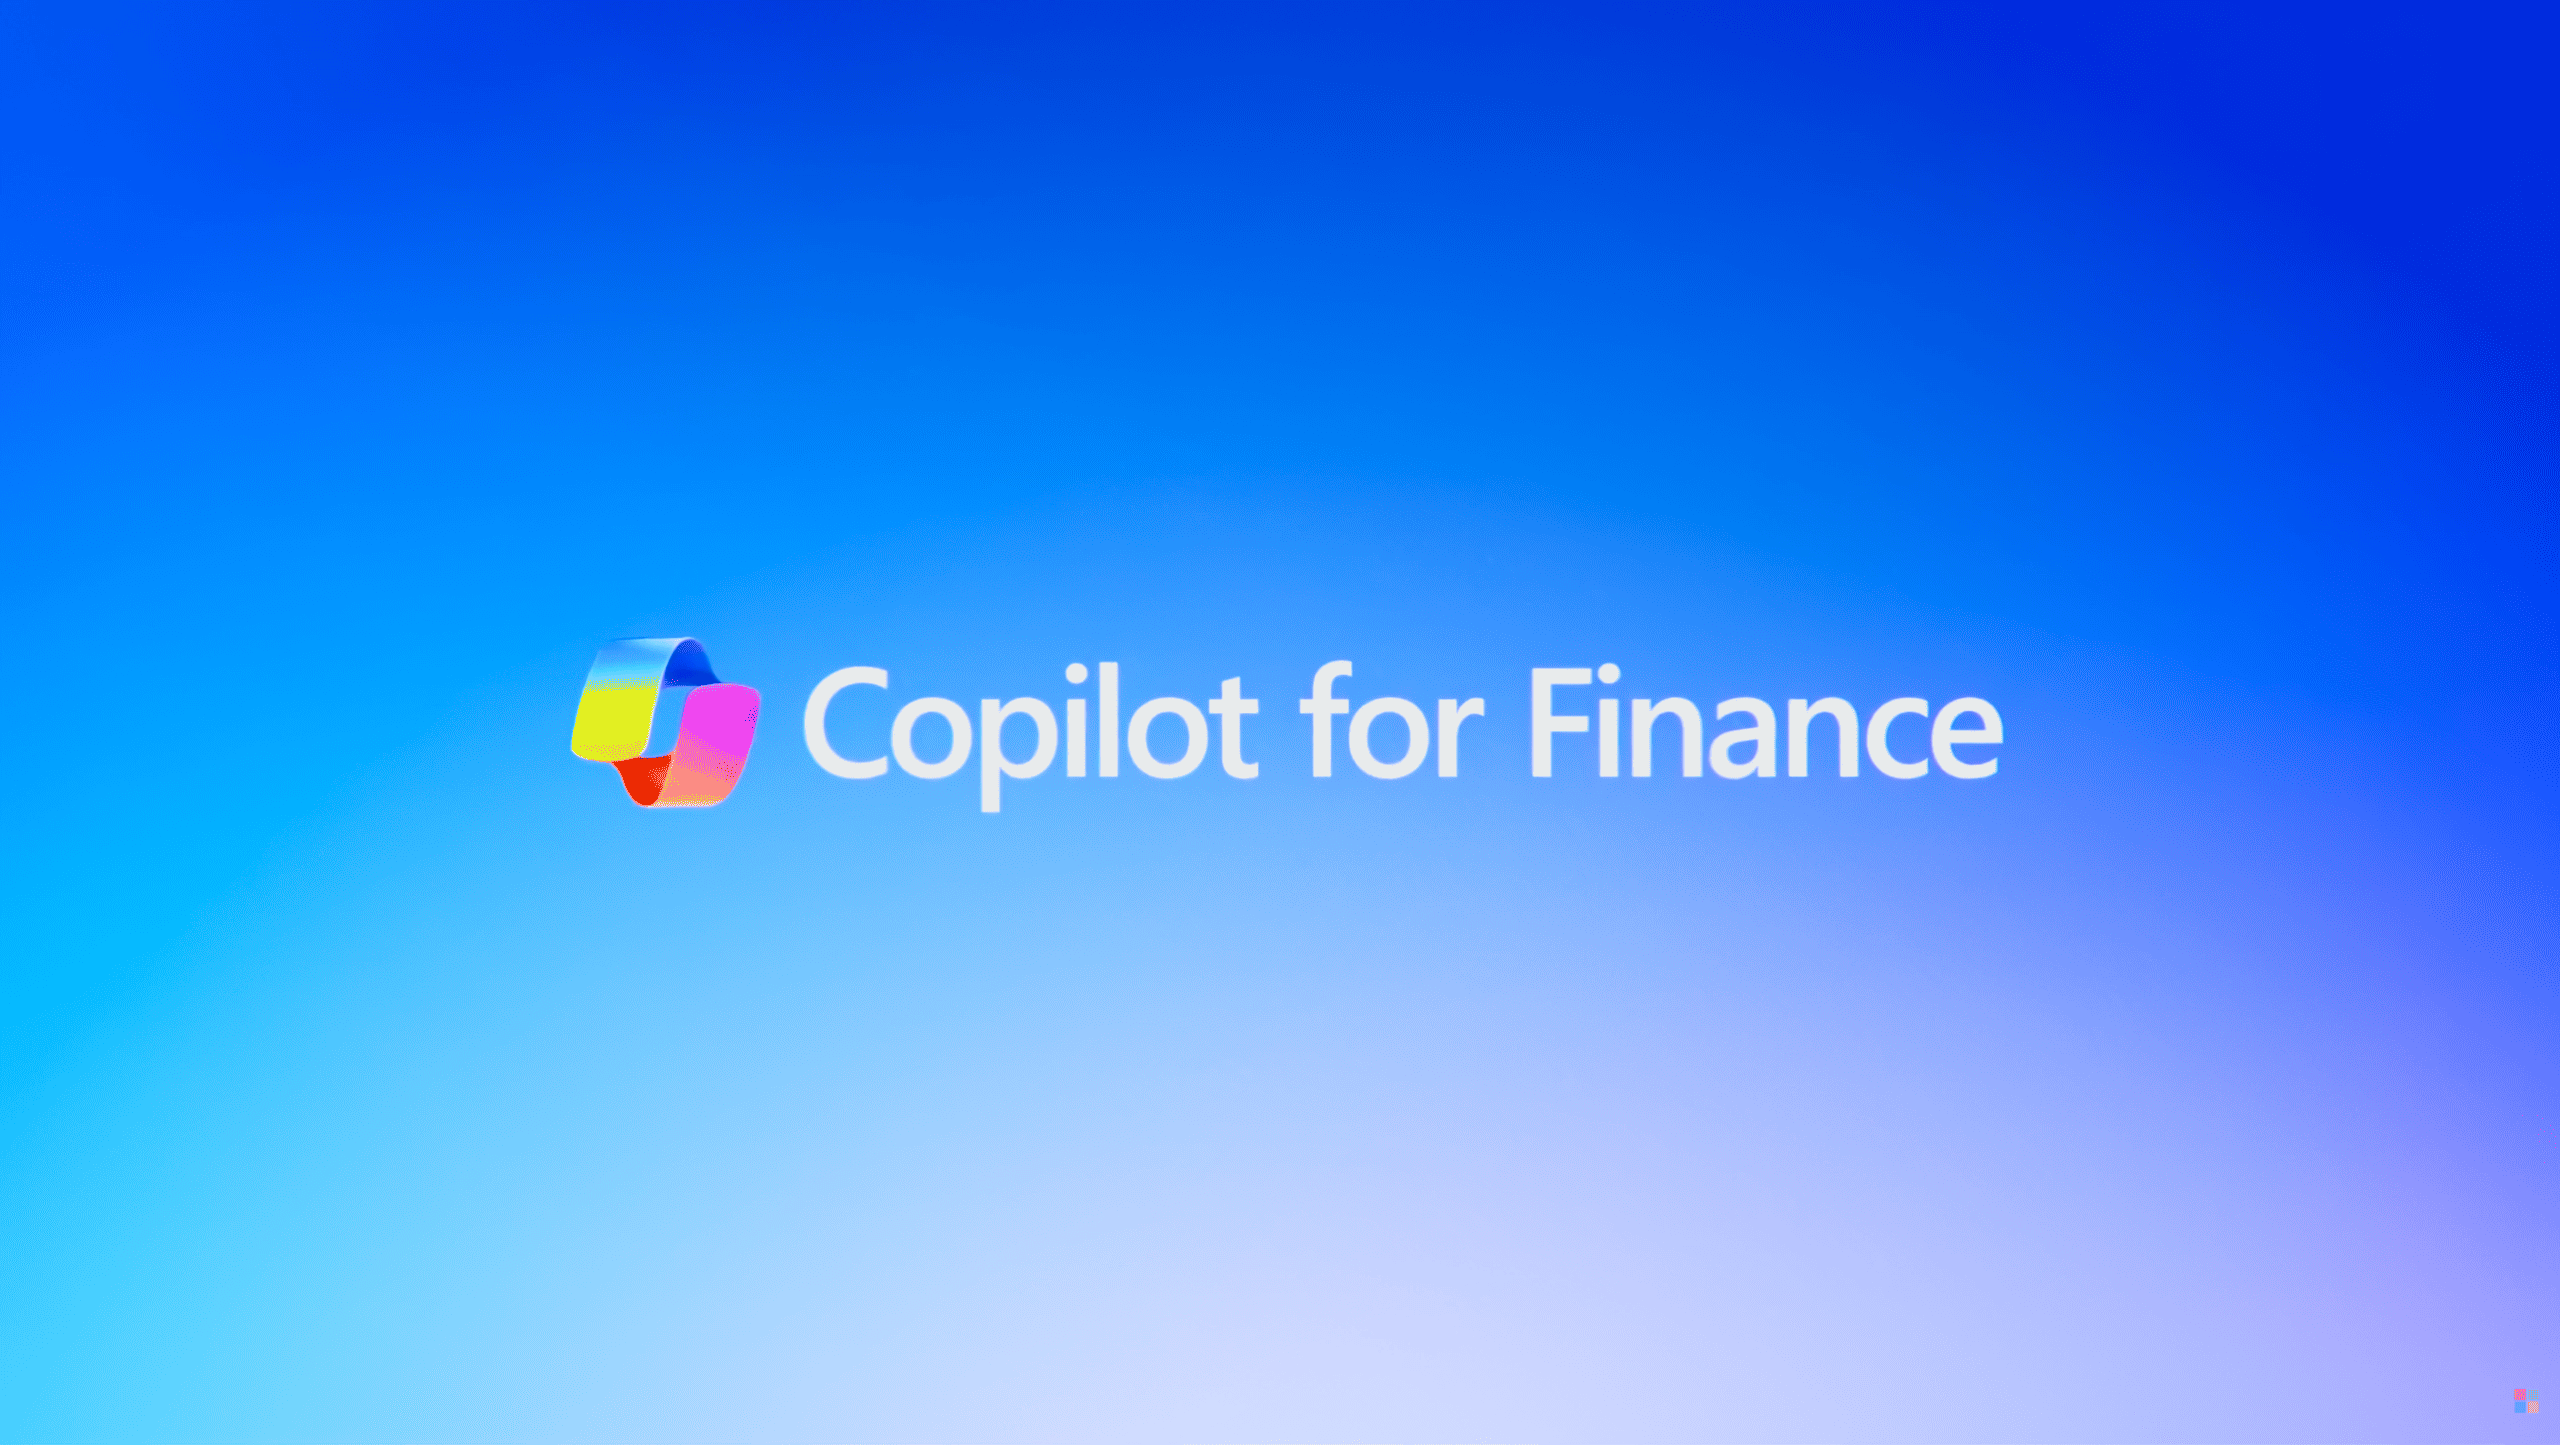 Microsoft、財務管理業務の自動化を支援する「Copilot for Finance」のパブリックプレビューを開始